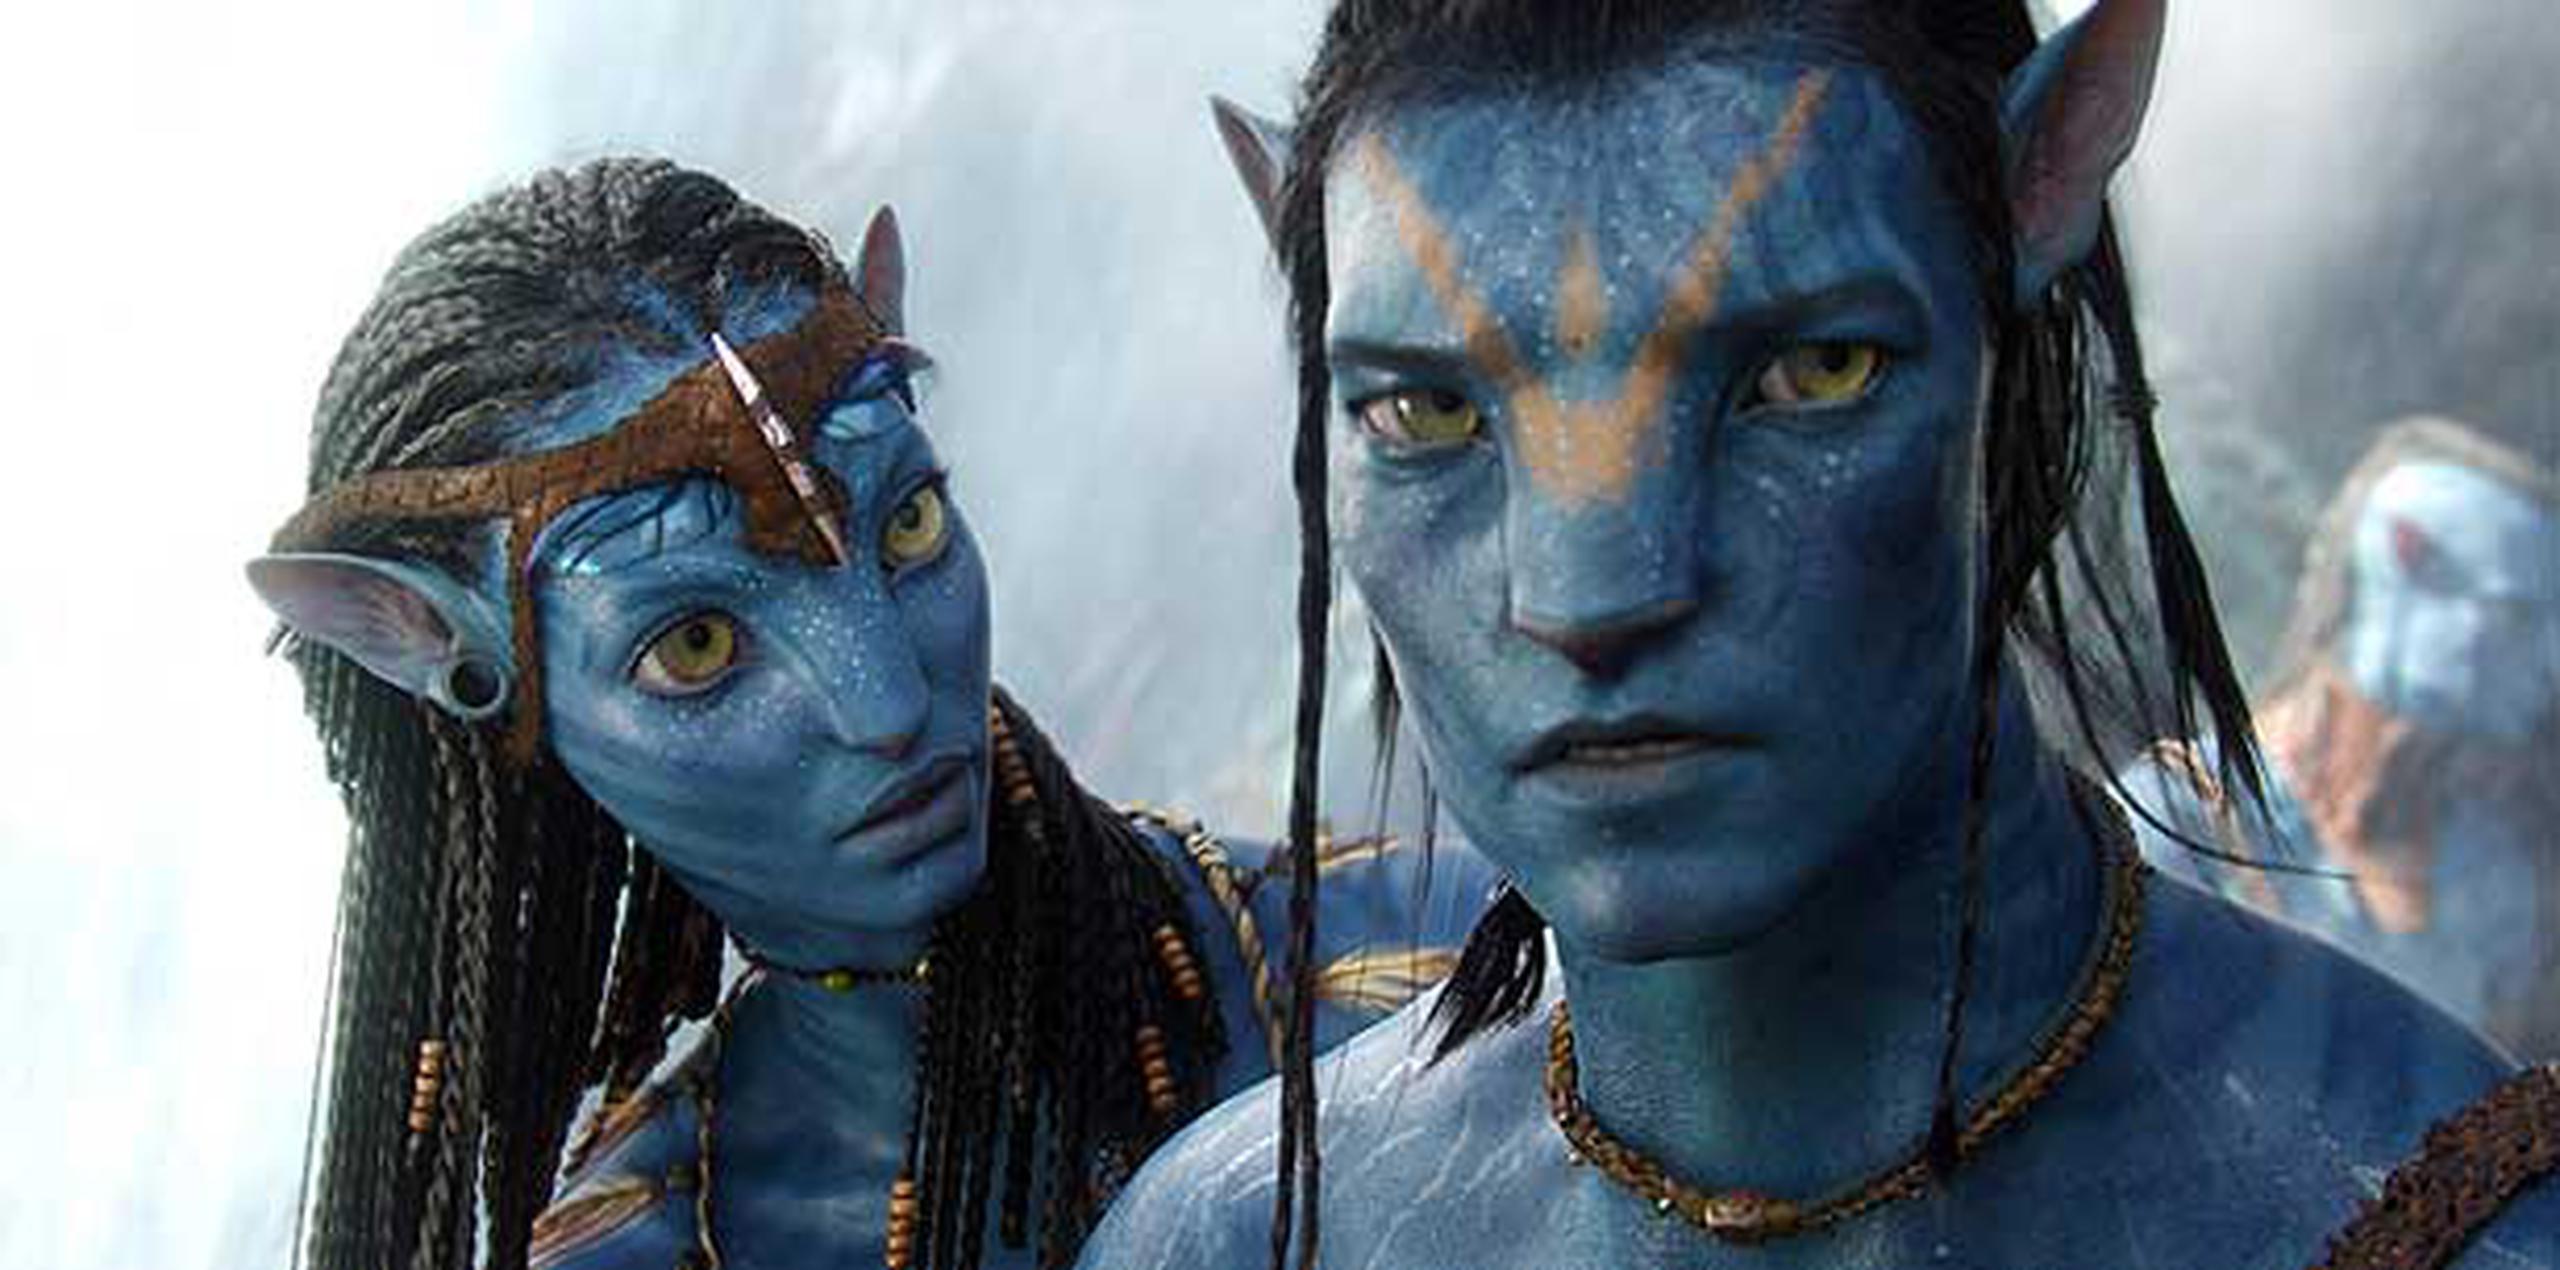 La película "Avatar", que se lanzó en 2009, ganó tres premios Oscar y recaudó casi $2,800 millones. (EFE/Archivo/WETA/Twentieth Century Fox)